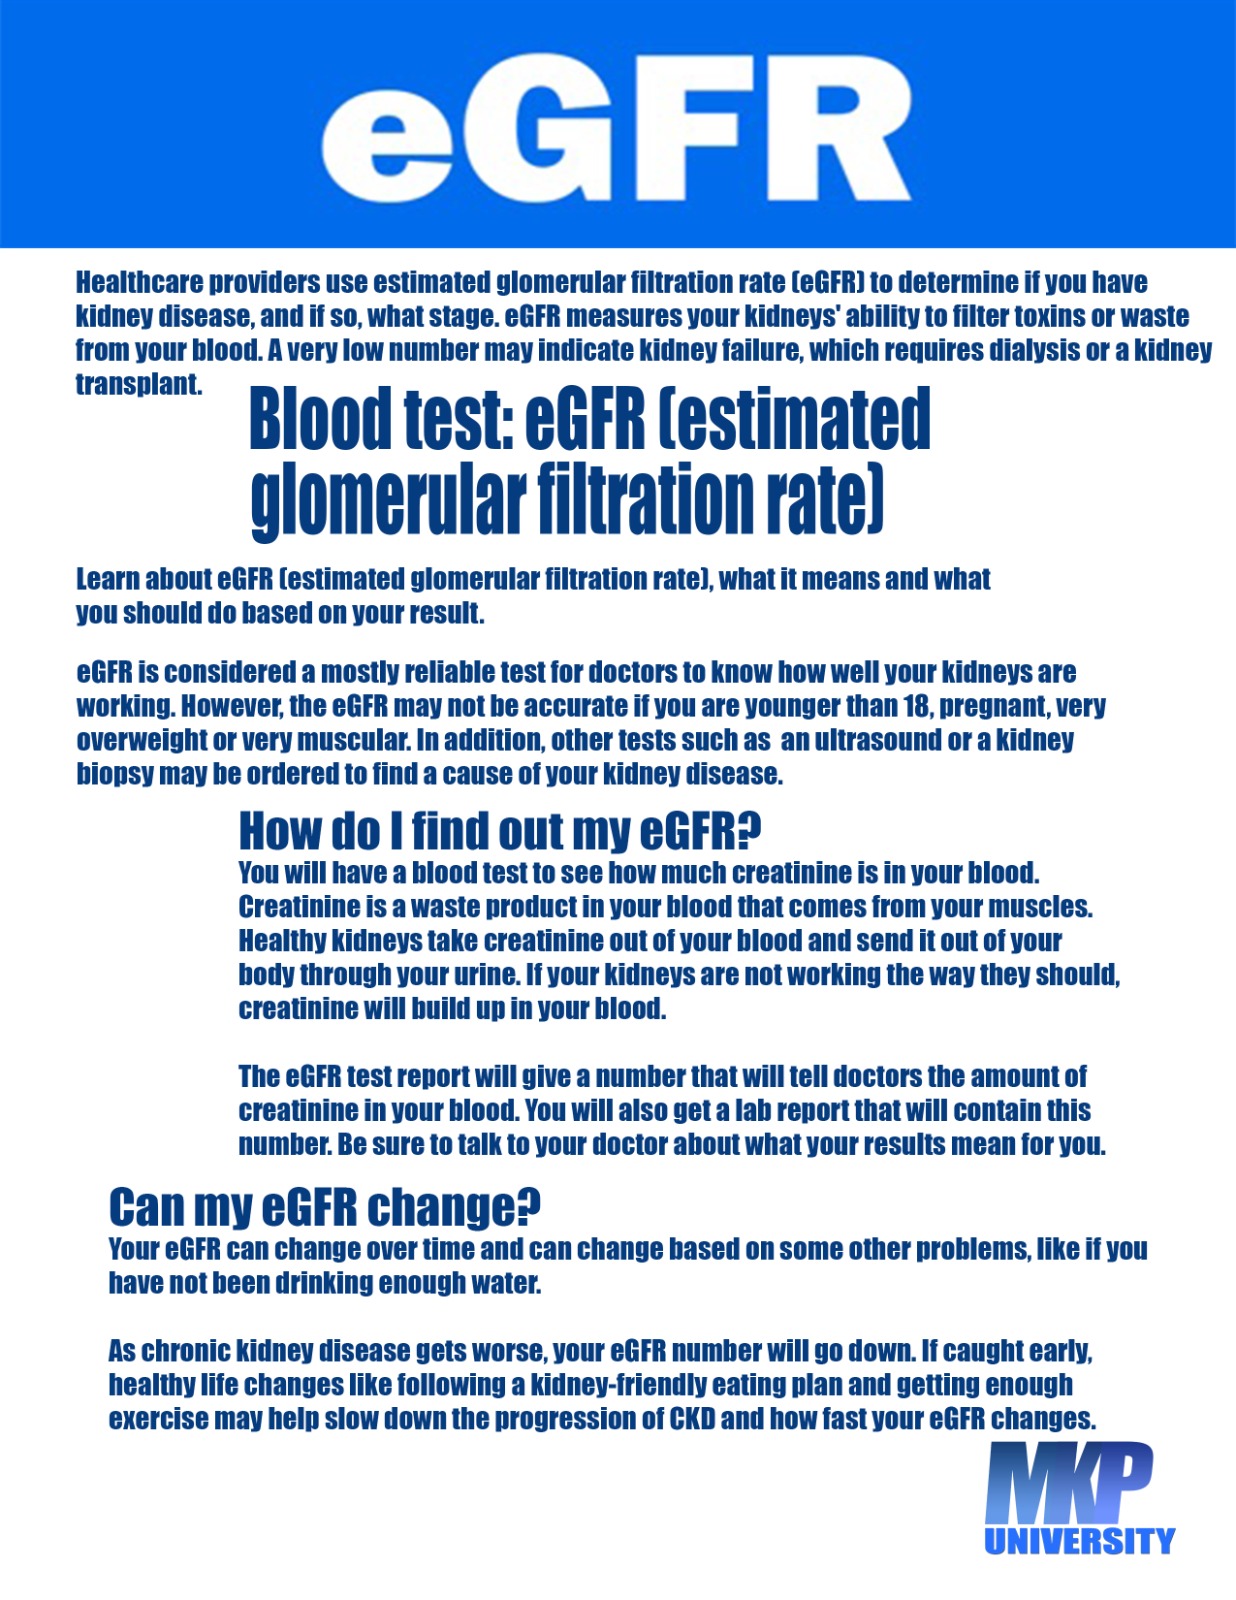 Blood Test: eGFR (estimated glomerular filtration rate)